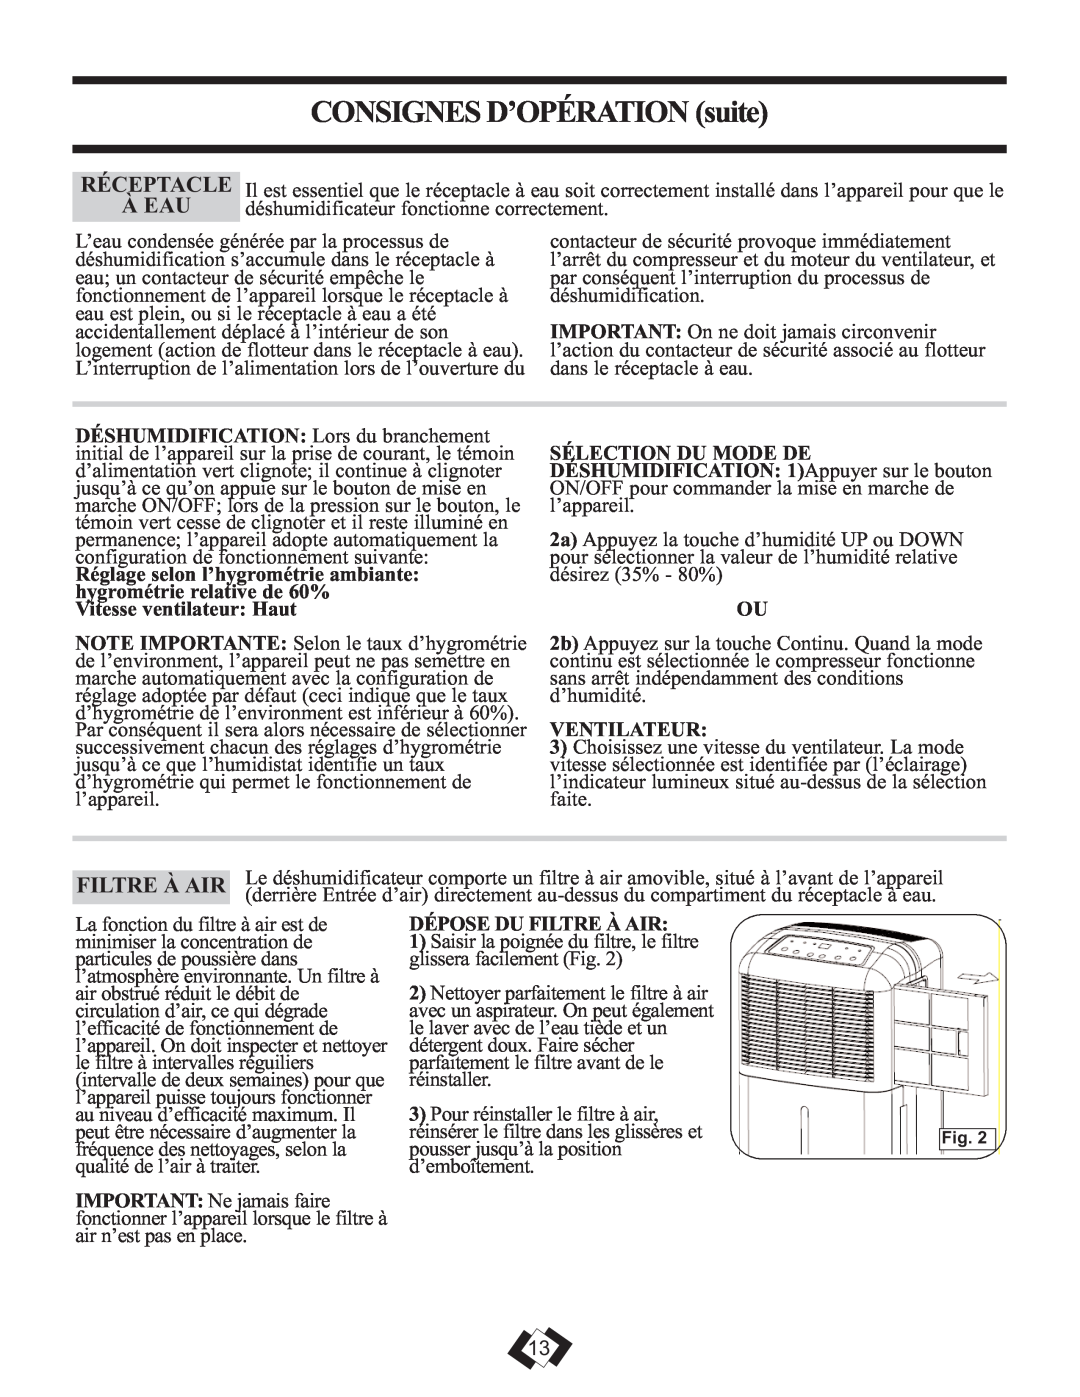 DeWalt DDR2509EE operating instructions CONSIGNESD’OPÉRATION suite, Ventilateur, Dépose Du Filtre À Air 